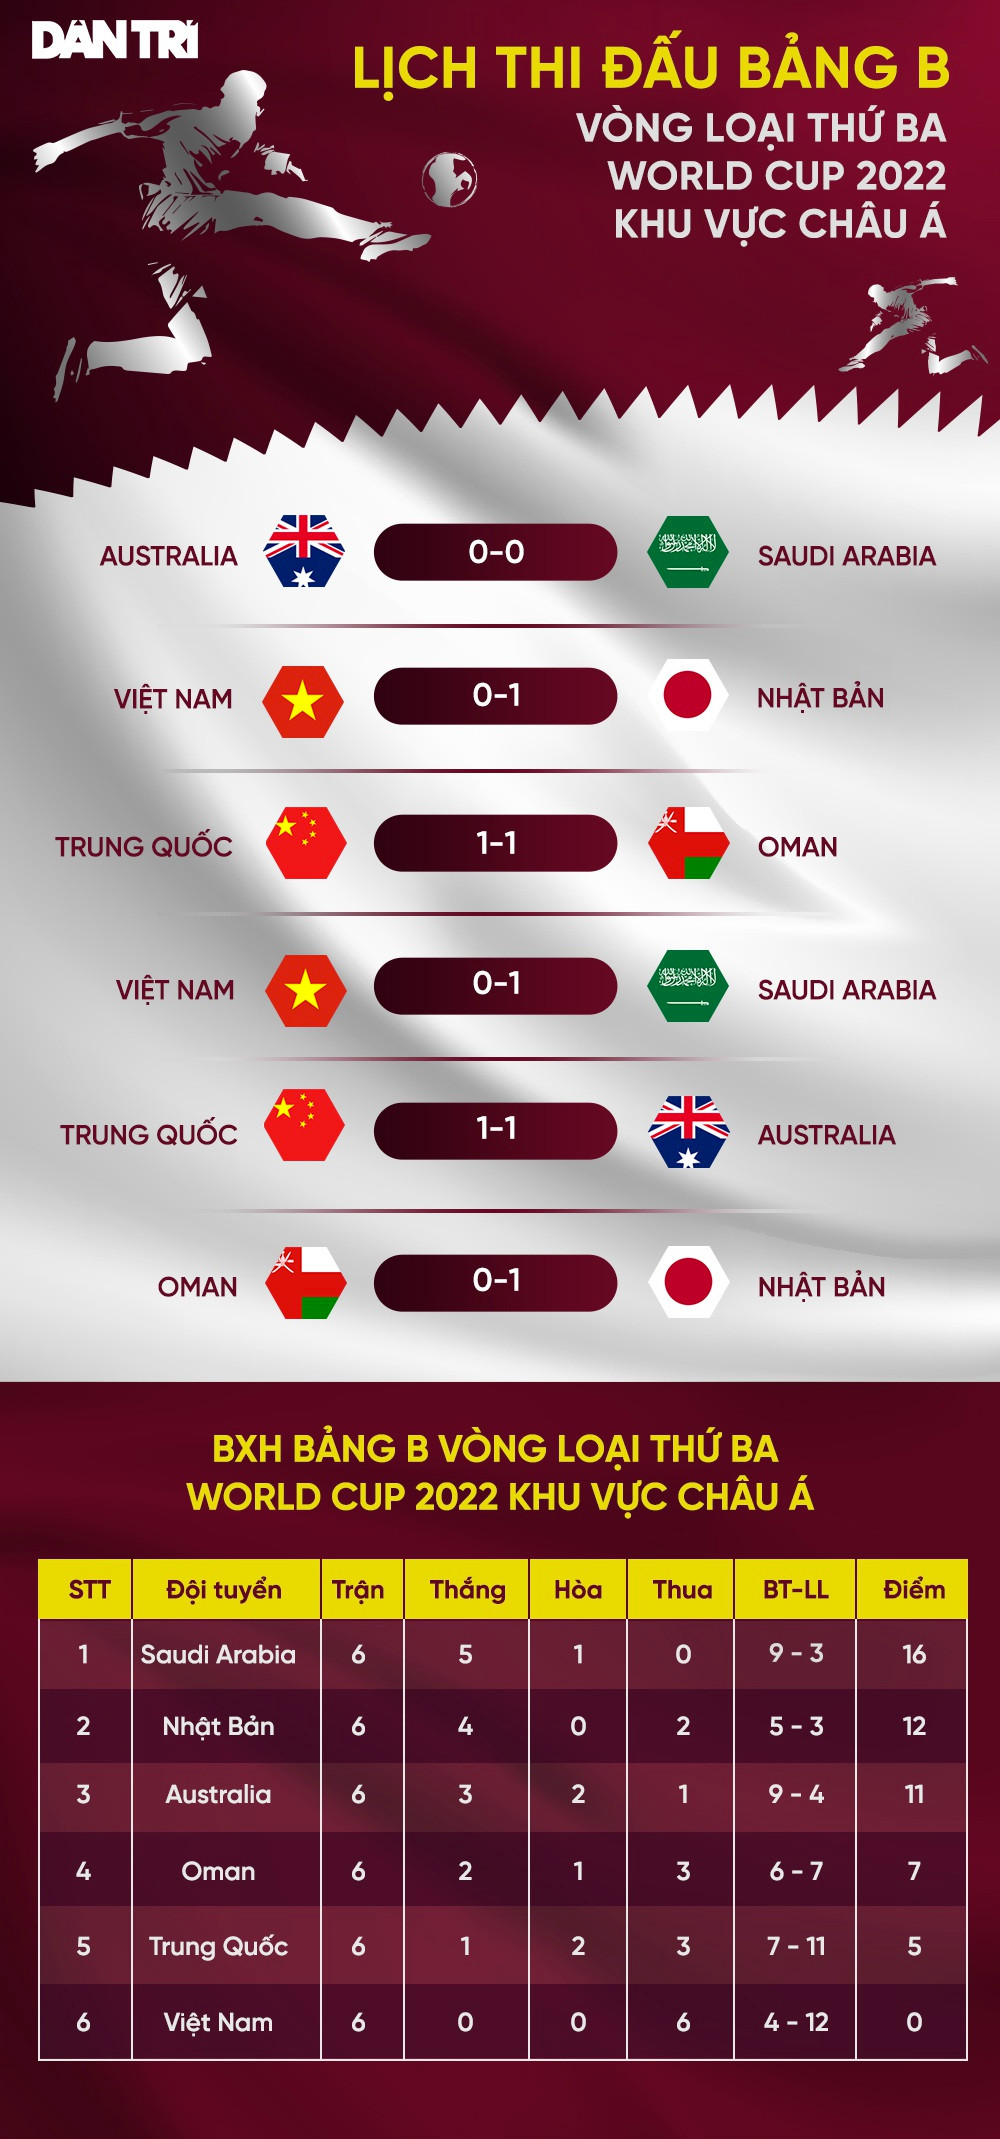 Đội tuyển Việt Nam bị trừ bao nhiêu điểm sau trận thua Saudi Arabia? - 3